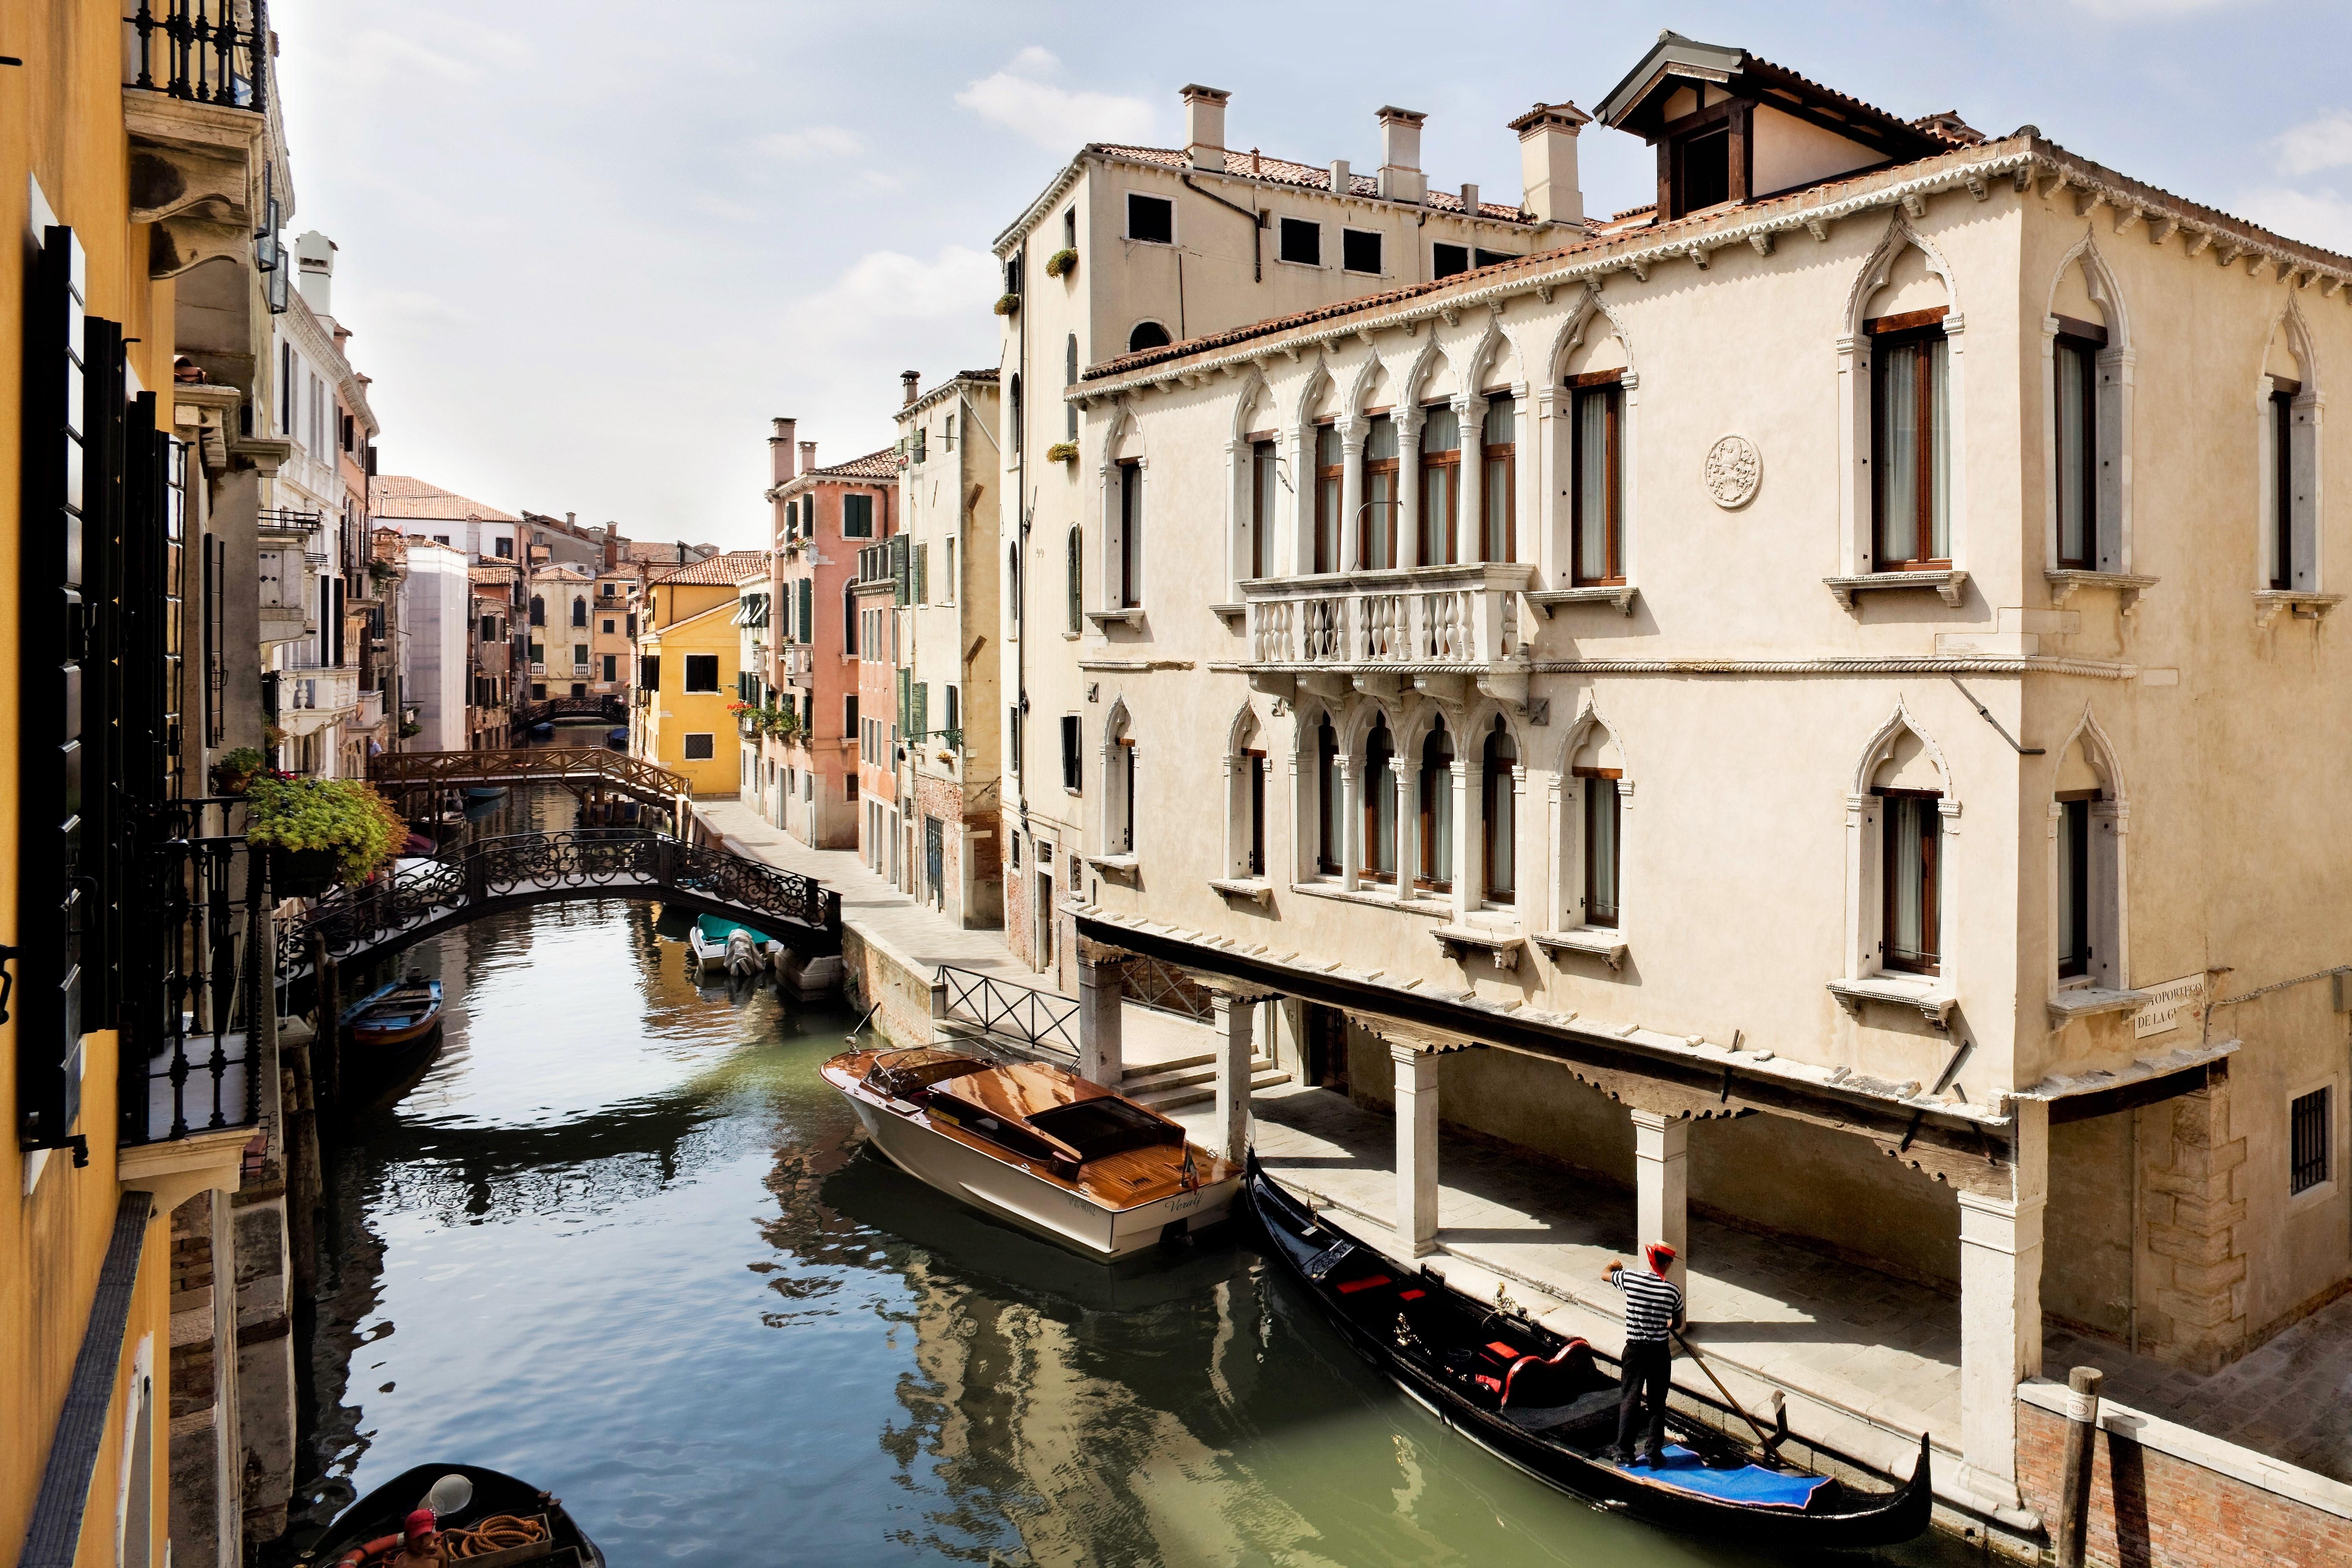 Maison Venezia | Una Esperienze Kültér fotó